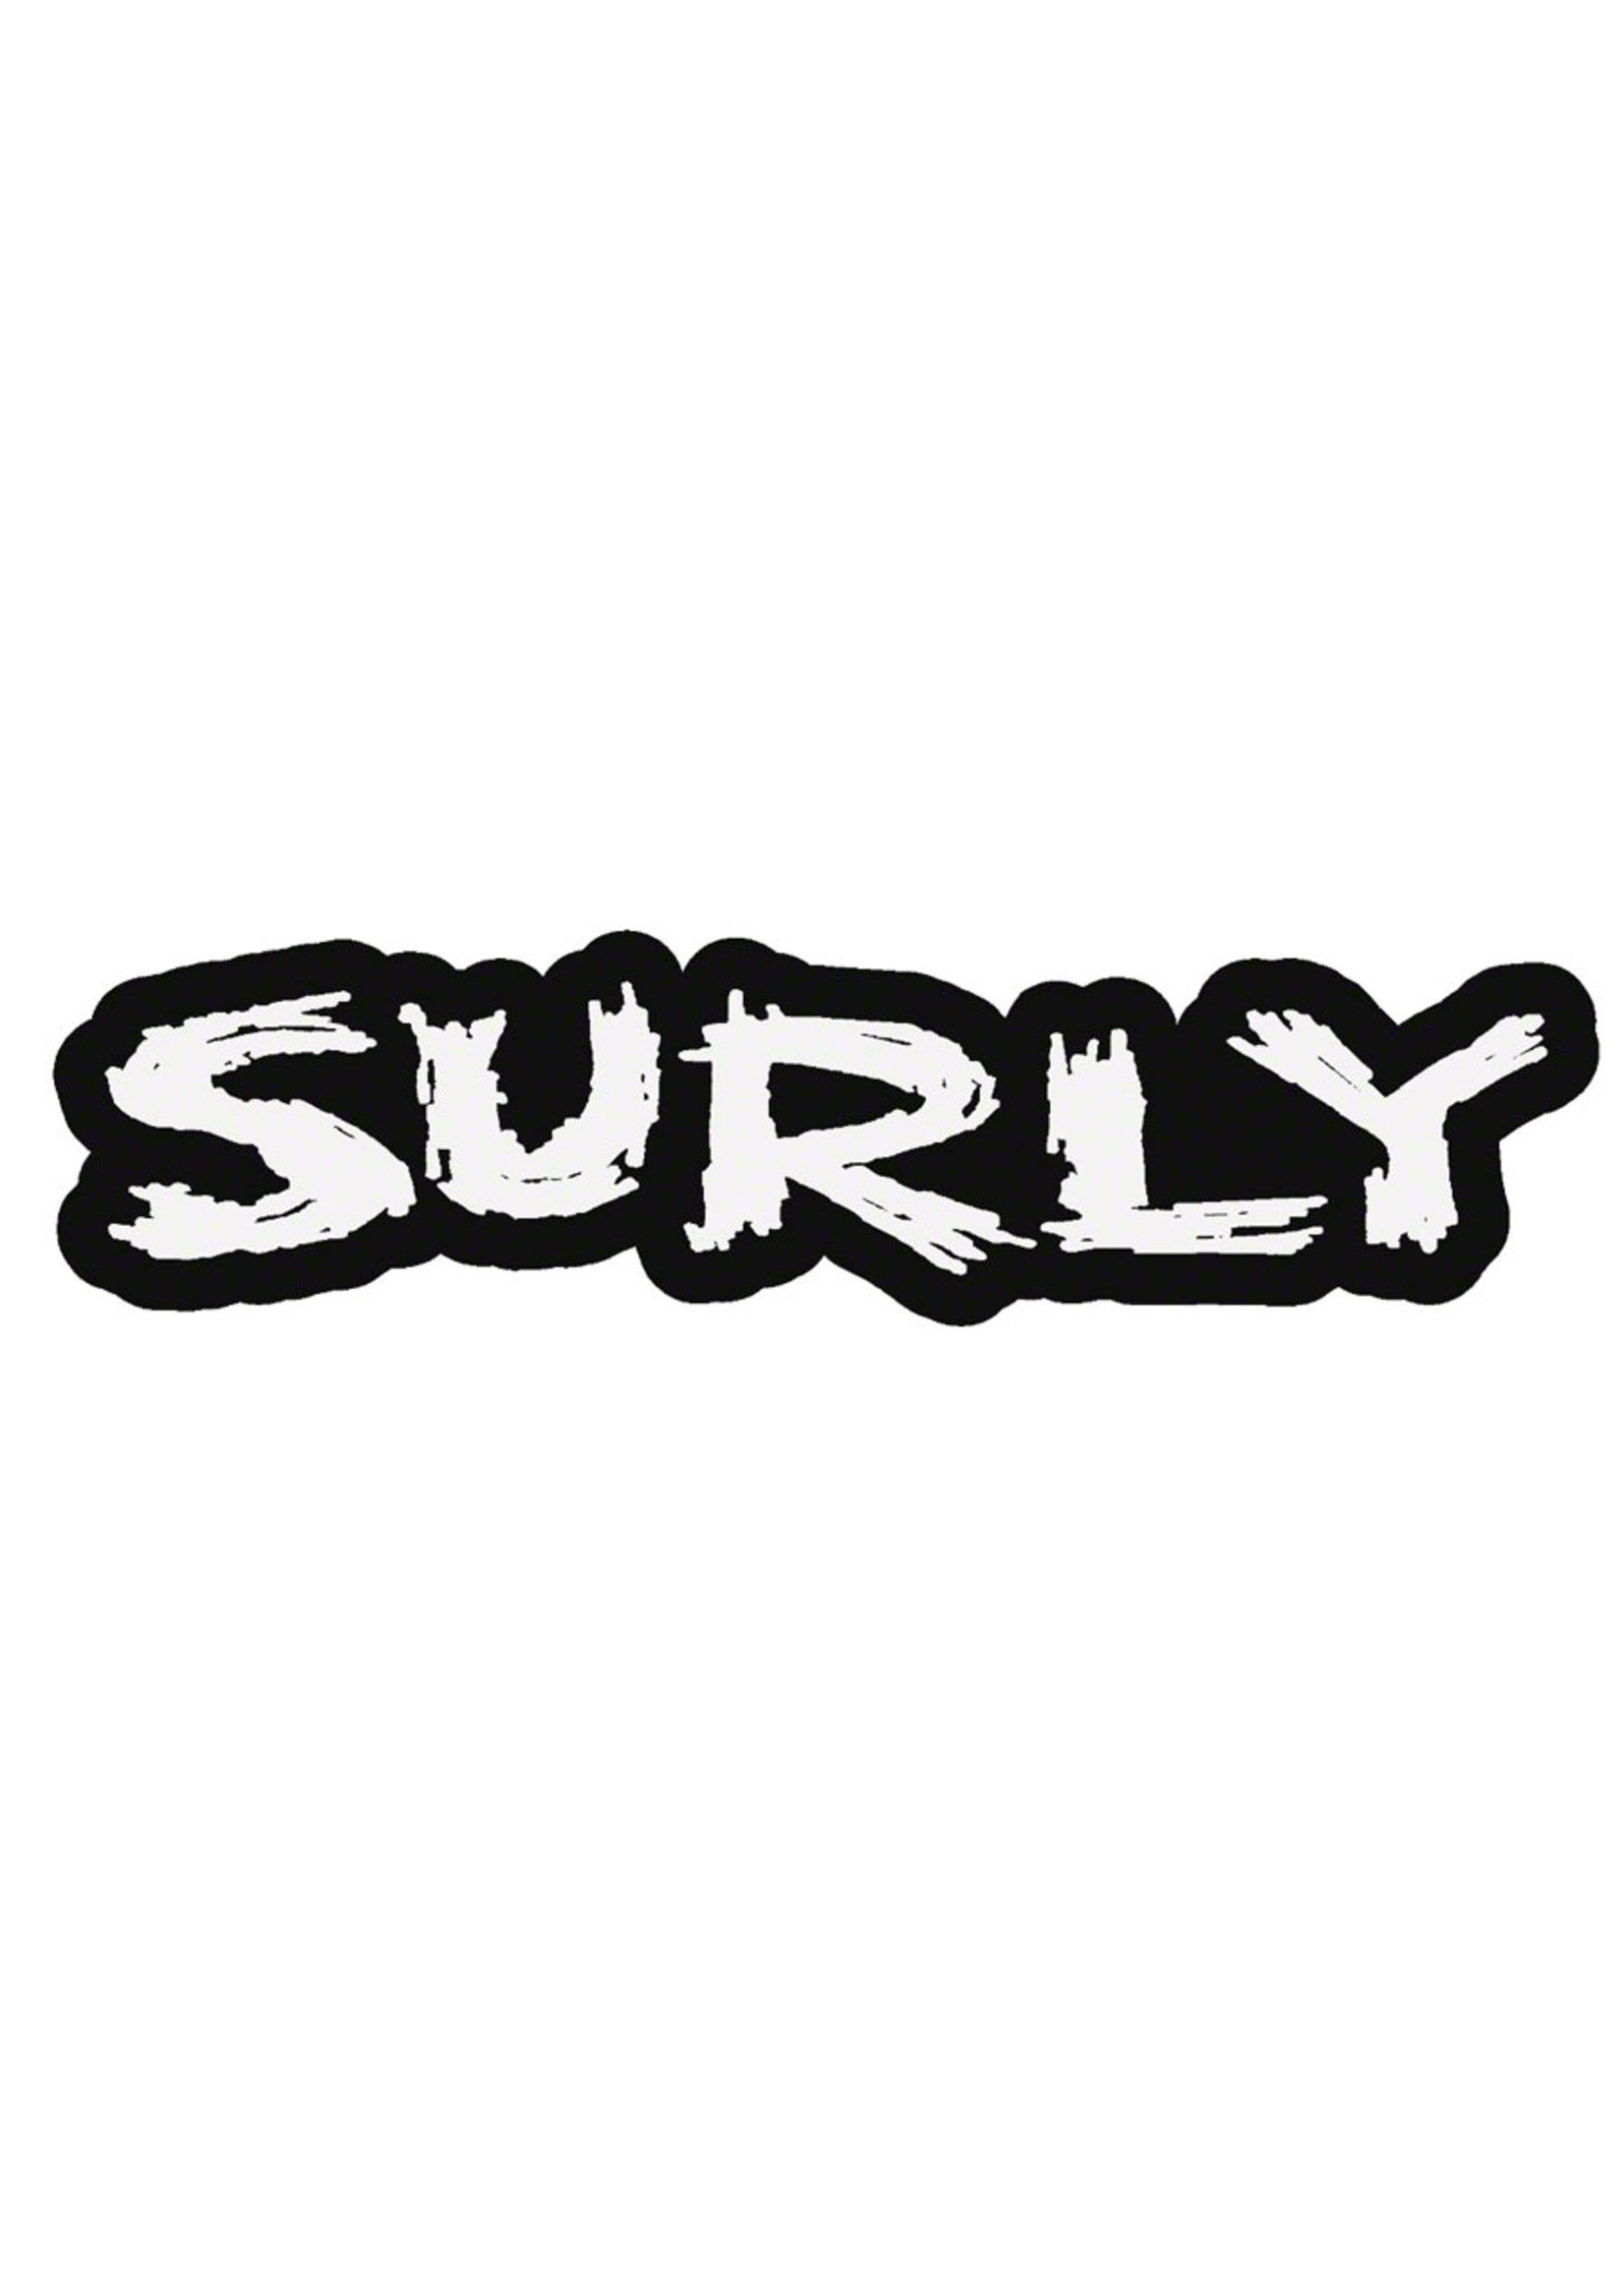 Surly Surly Logo Sticker 6.4 x 1.75